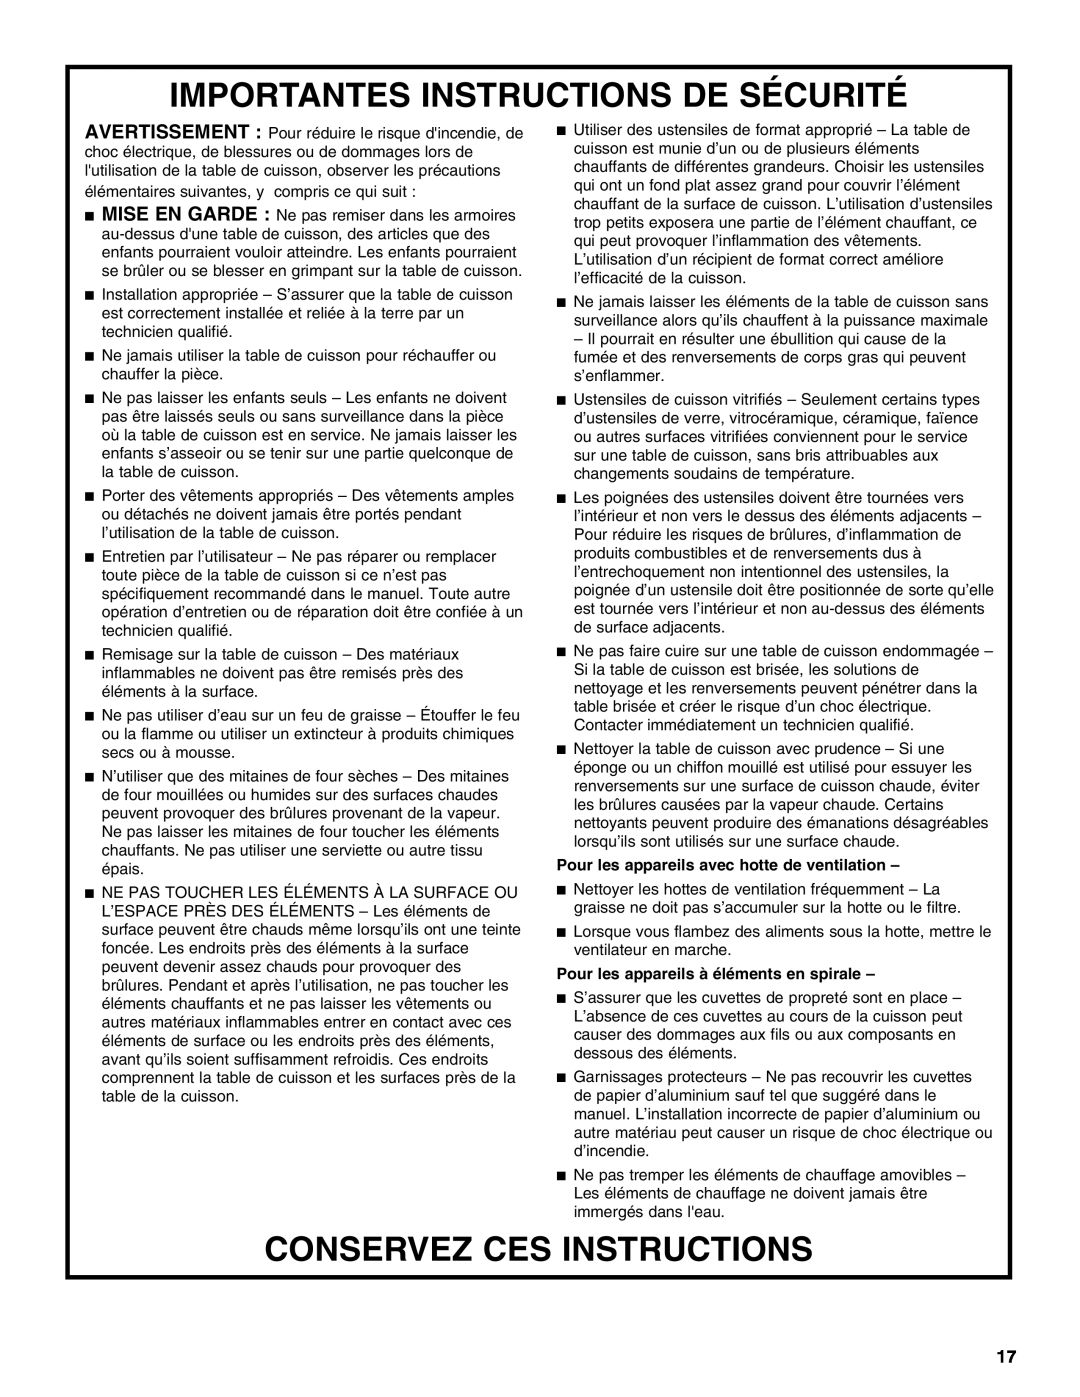 Jenn-Air W10197057B manual Importantes Instructions De Sécurité, Conservez Ces Instructions 